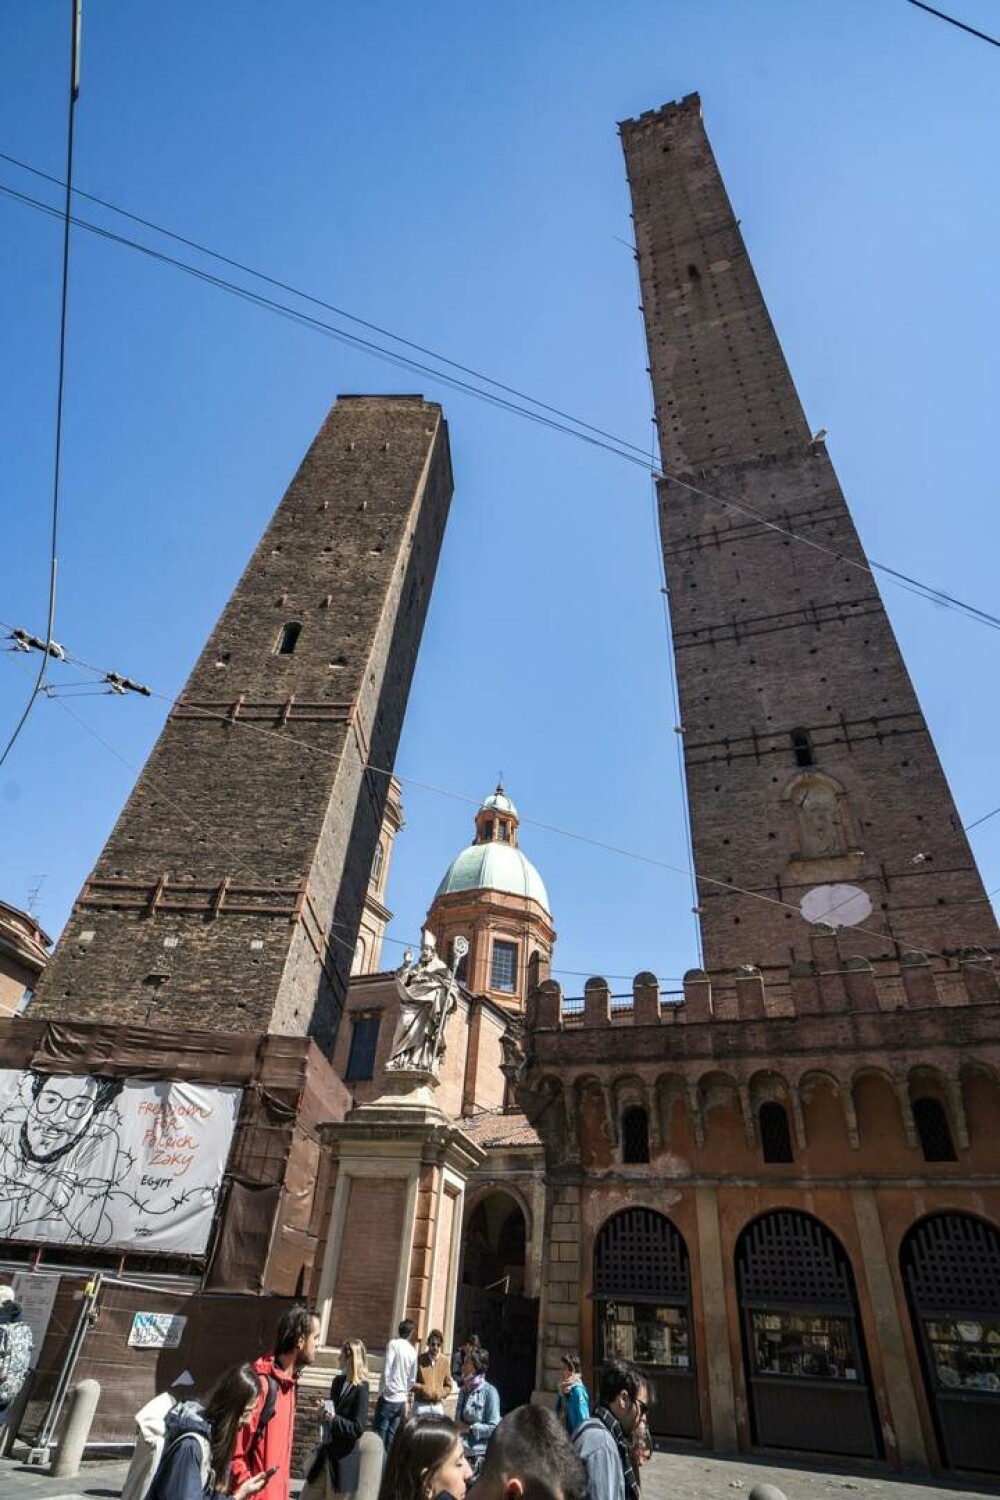 Turnul înclinat din Italia care s-ar putea prăbuși. Oficialii încearcă să-l mențină ridicat | GALERIE FOTO - Imaginea 5